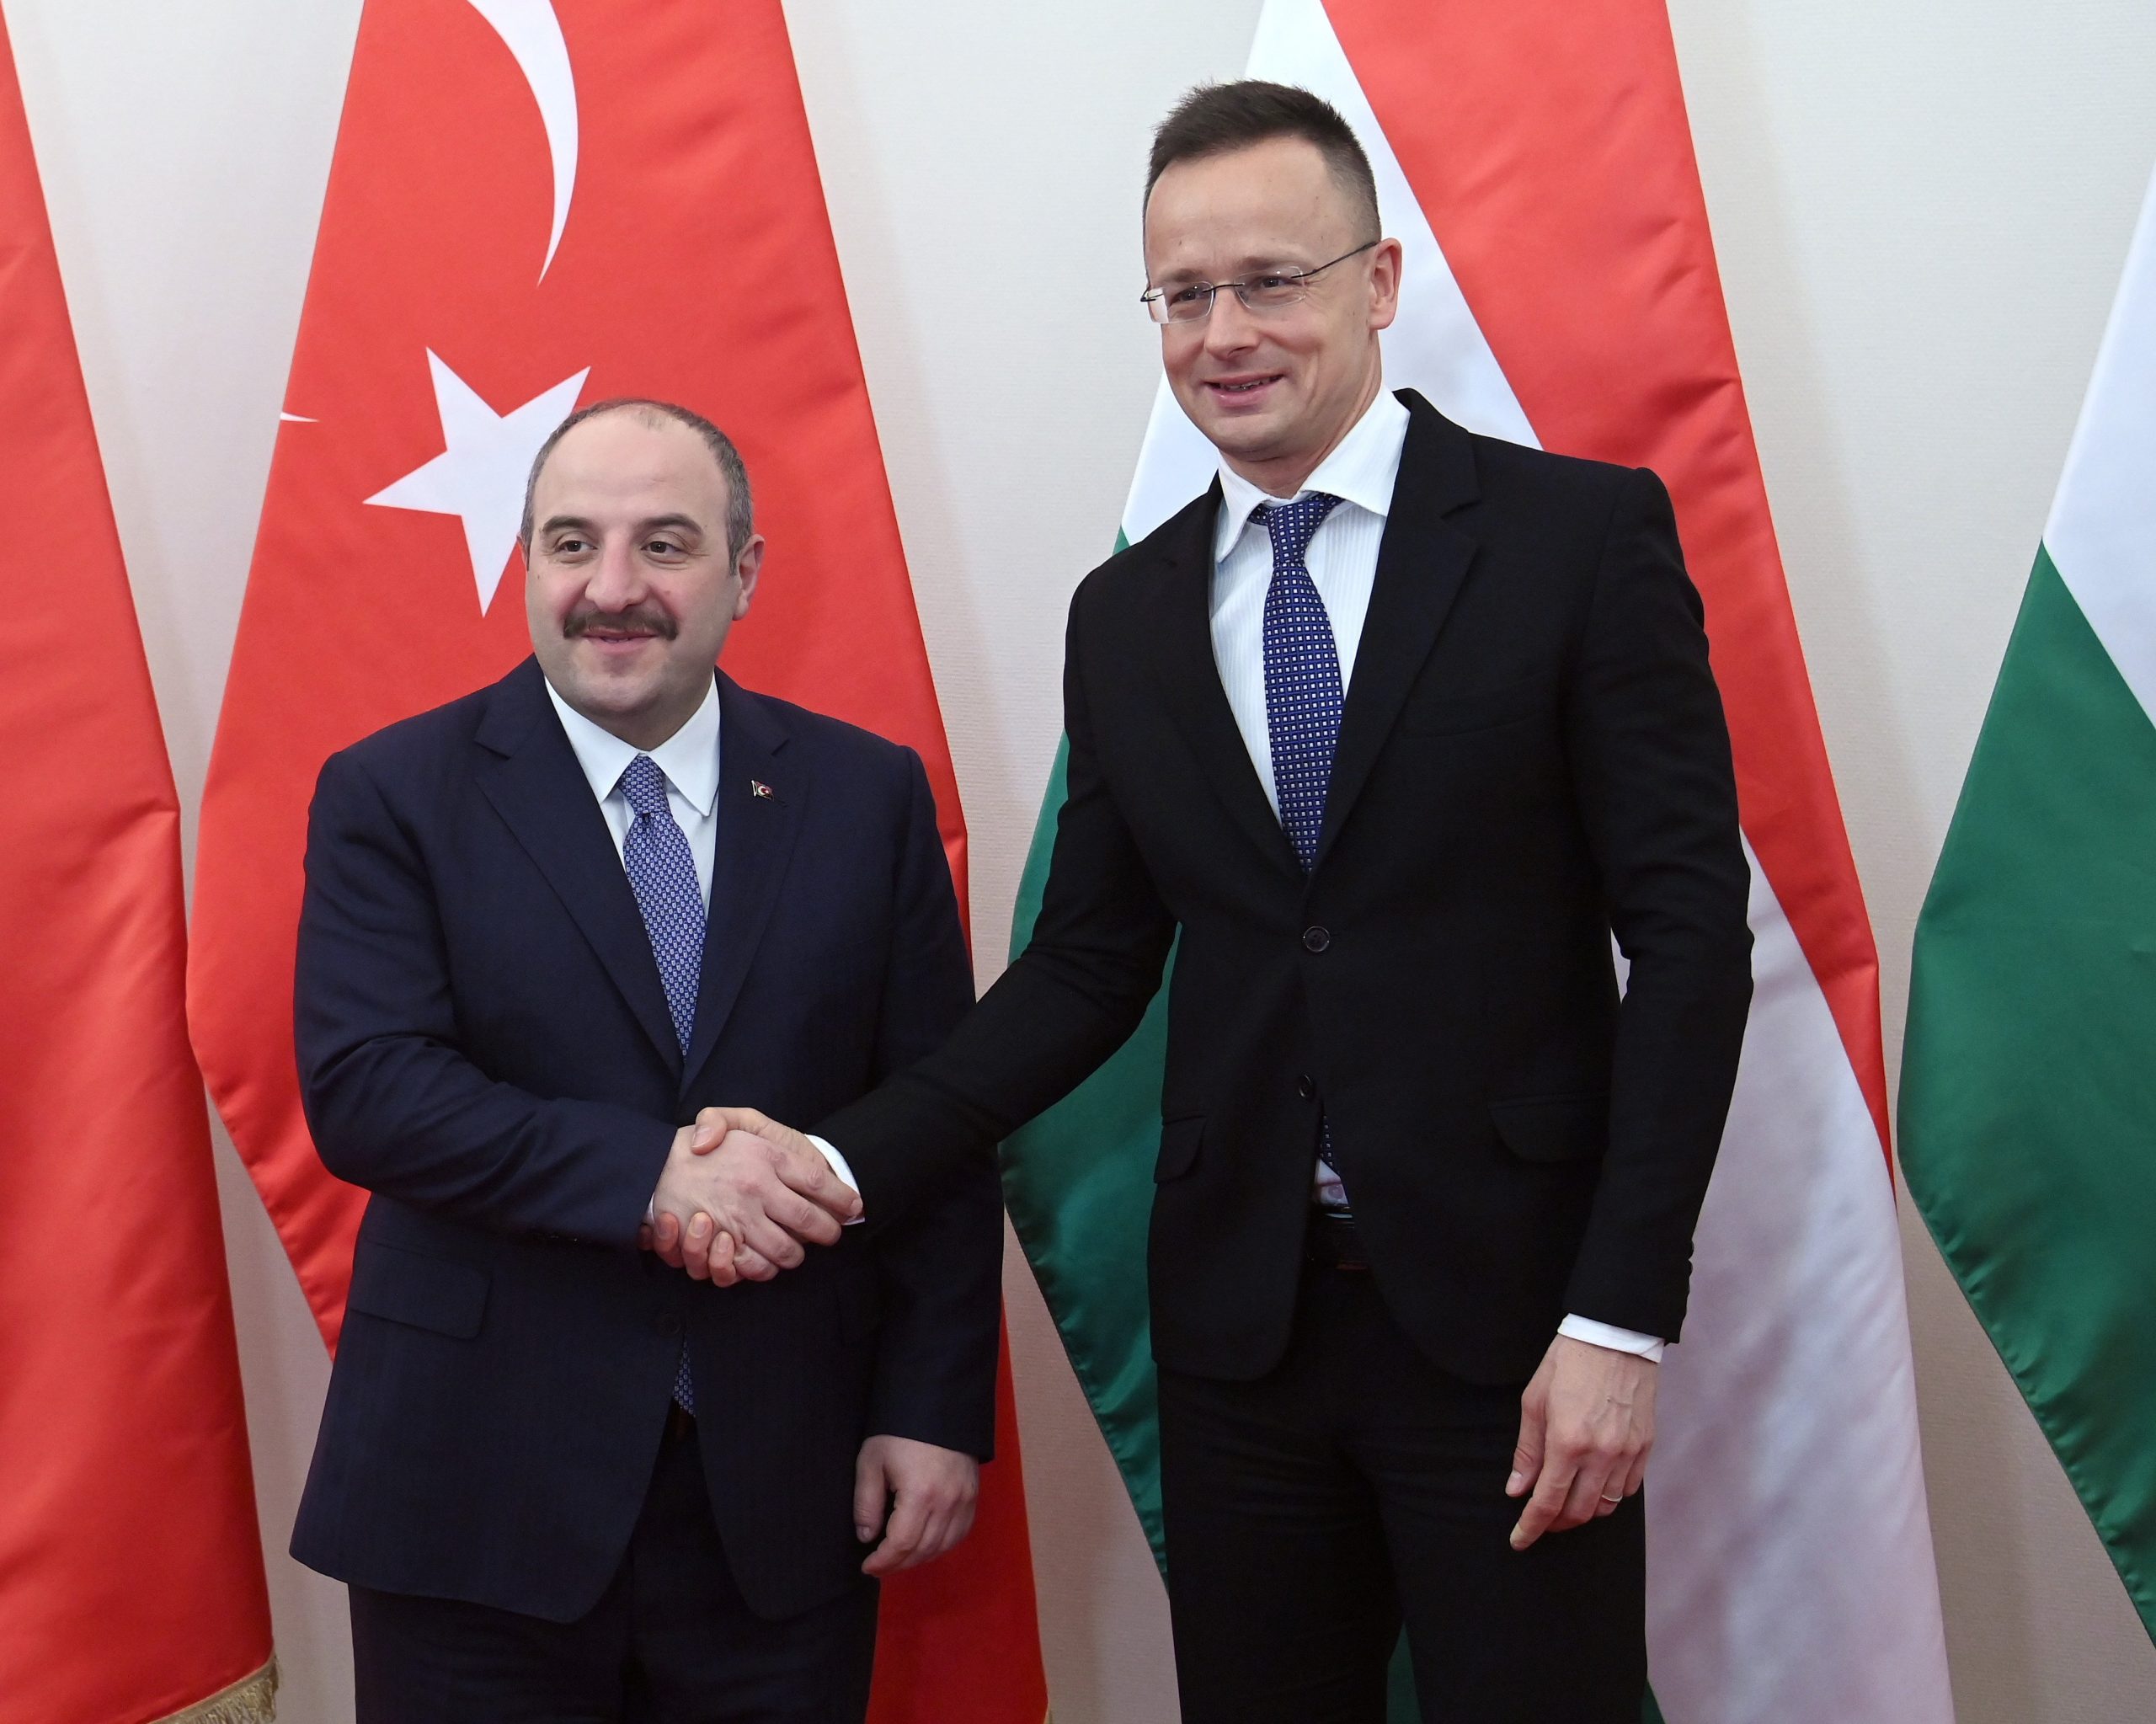 Türkisch-ungarische Wirtschaftskooperation im Aufschwung